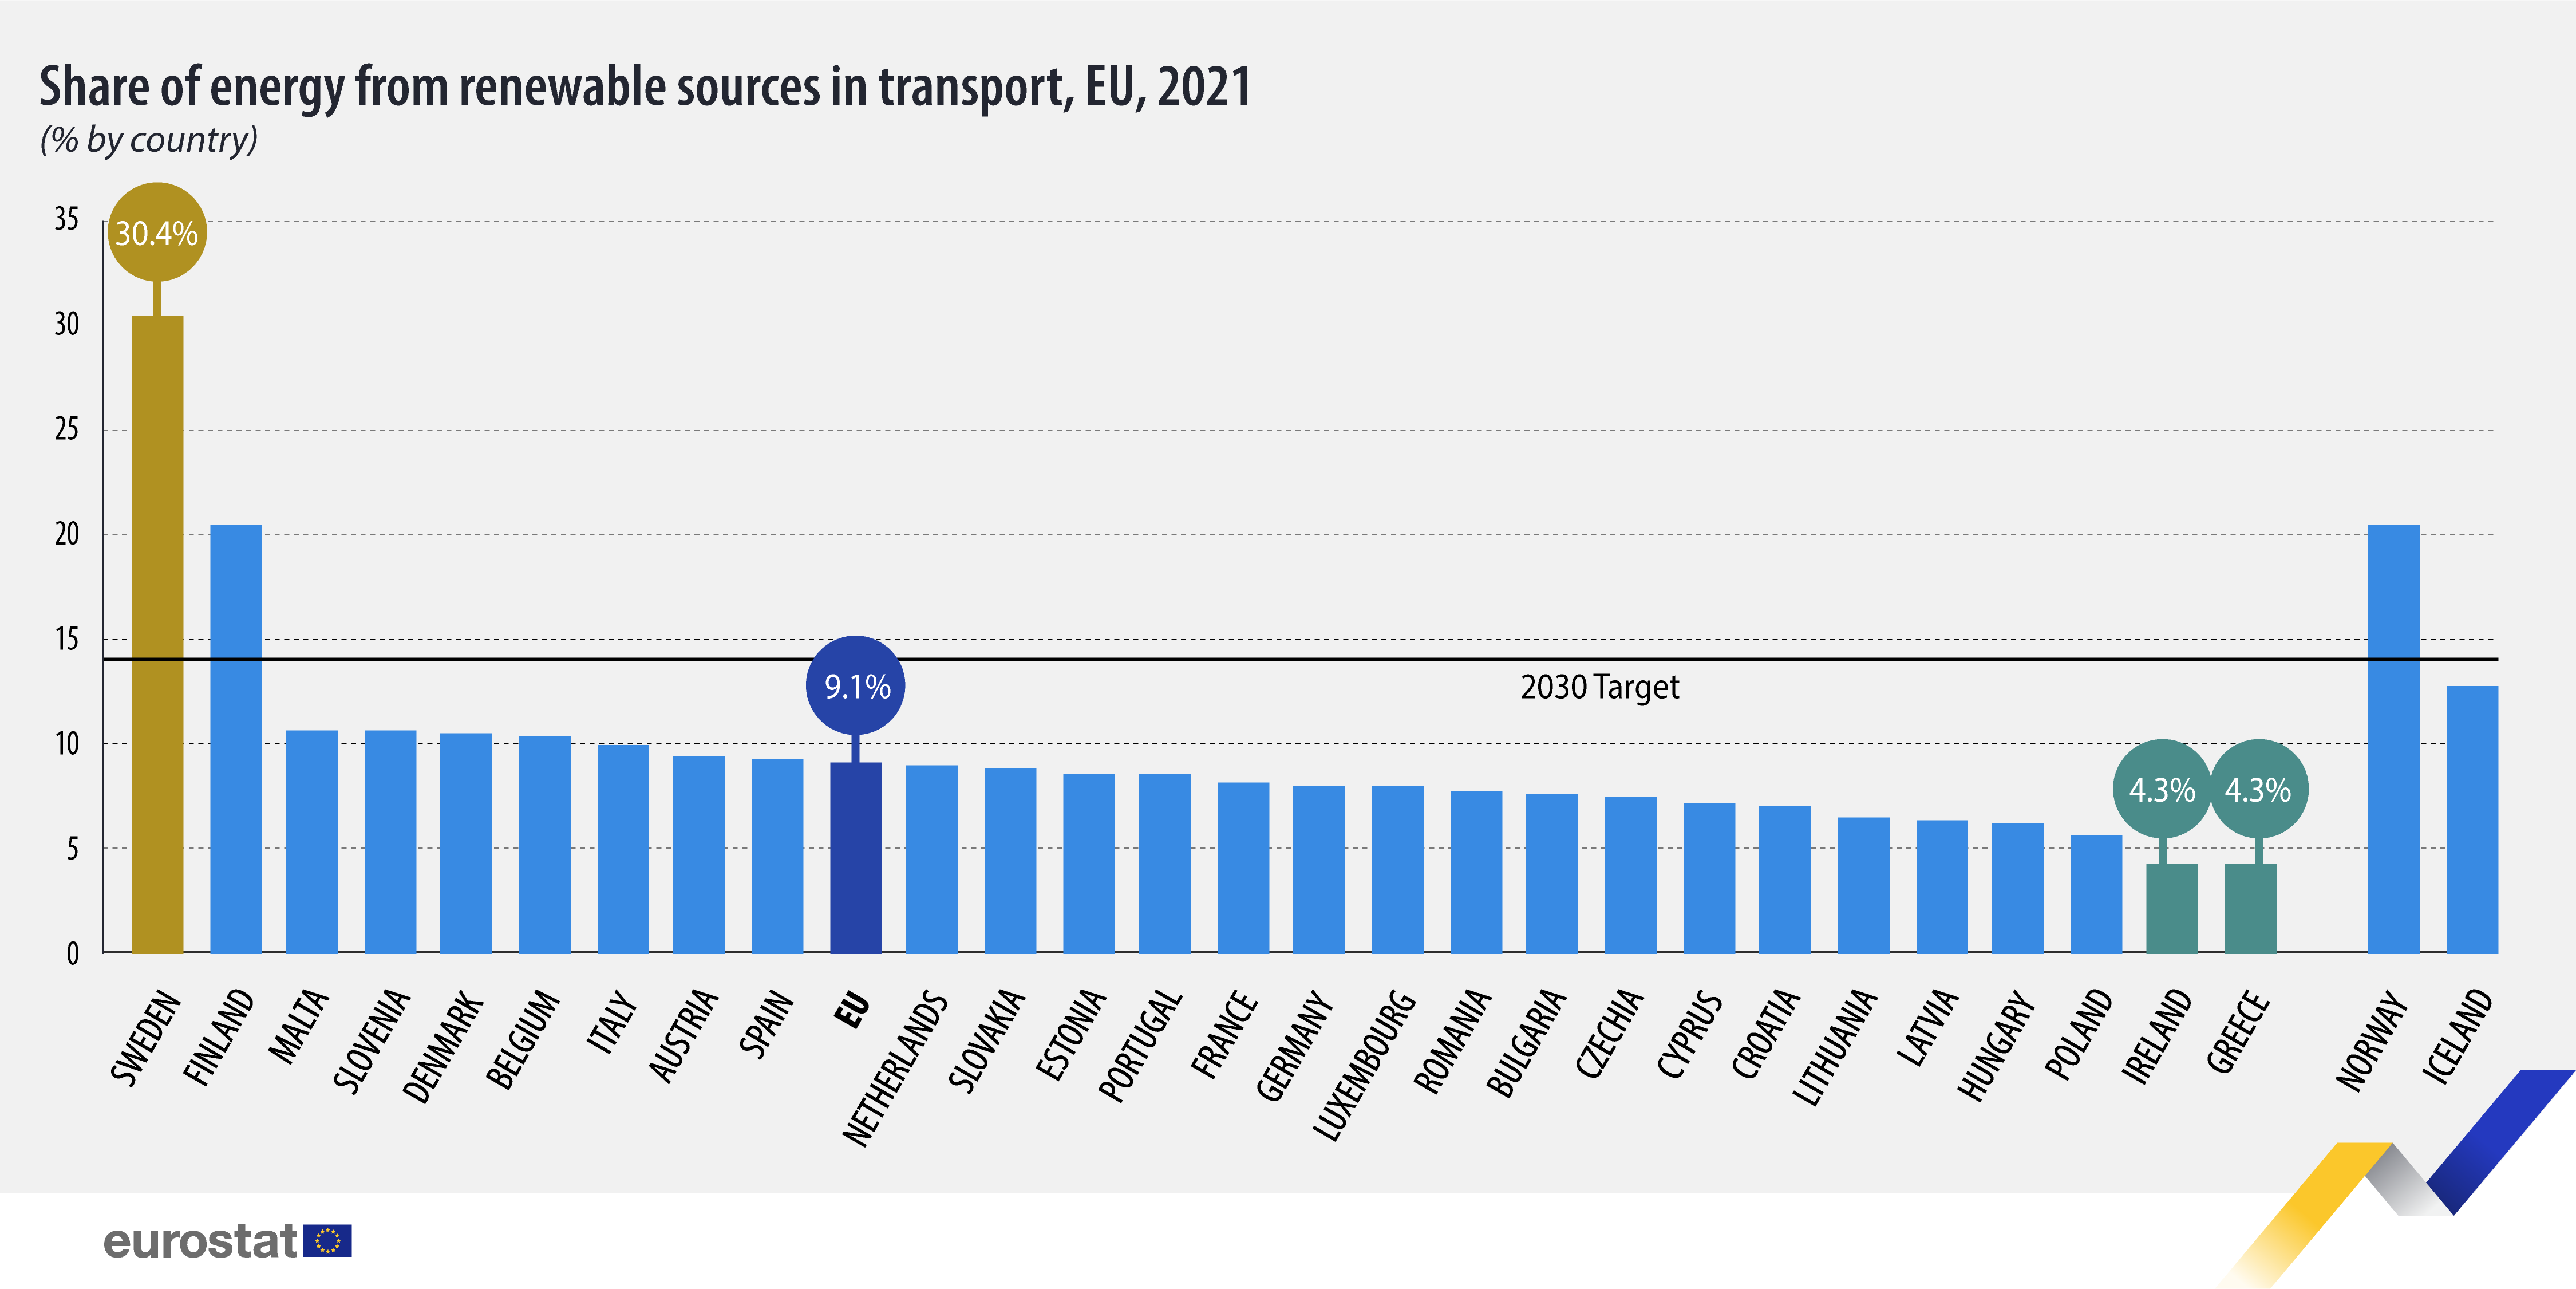 Διάγραμμα ράβδων: Μερίδιο ενέργειας από ανανεώσιμες πηγές στις μεταφορές, % ανά χώρα, ΕΕ, 2021